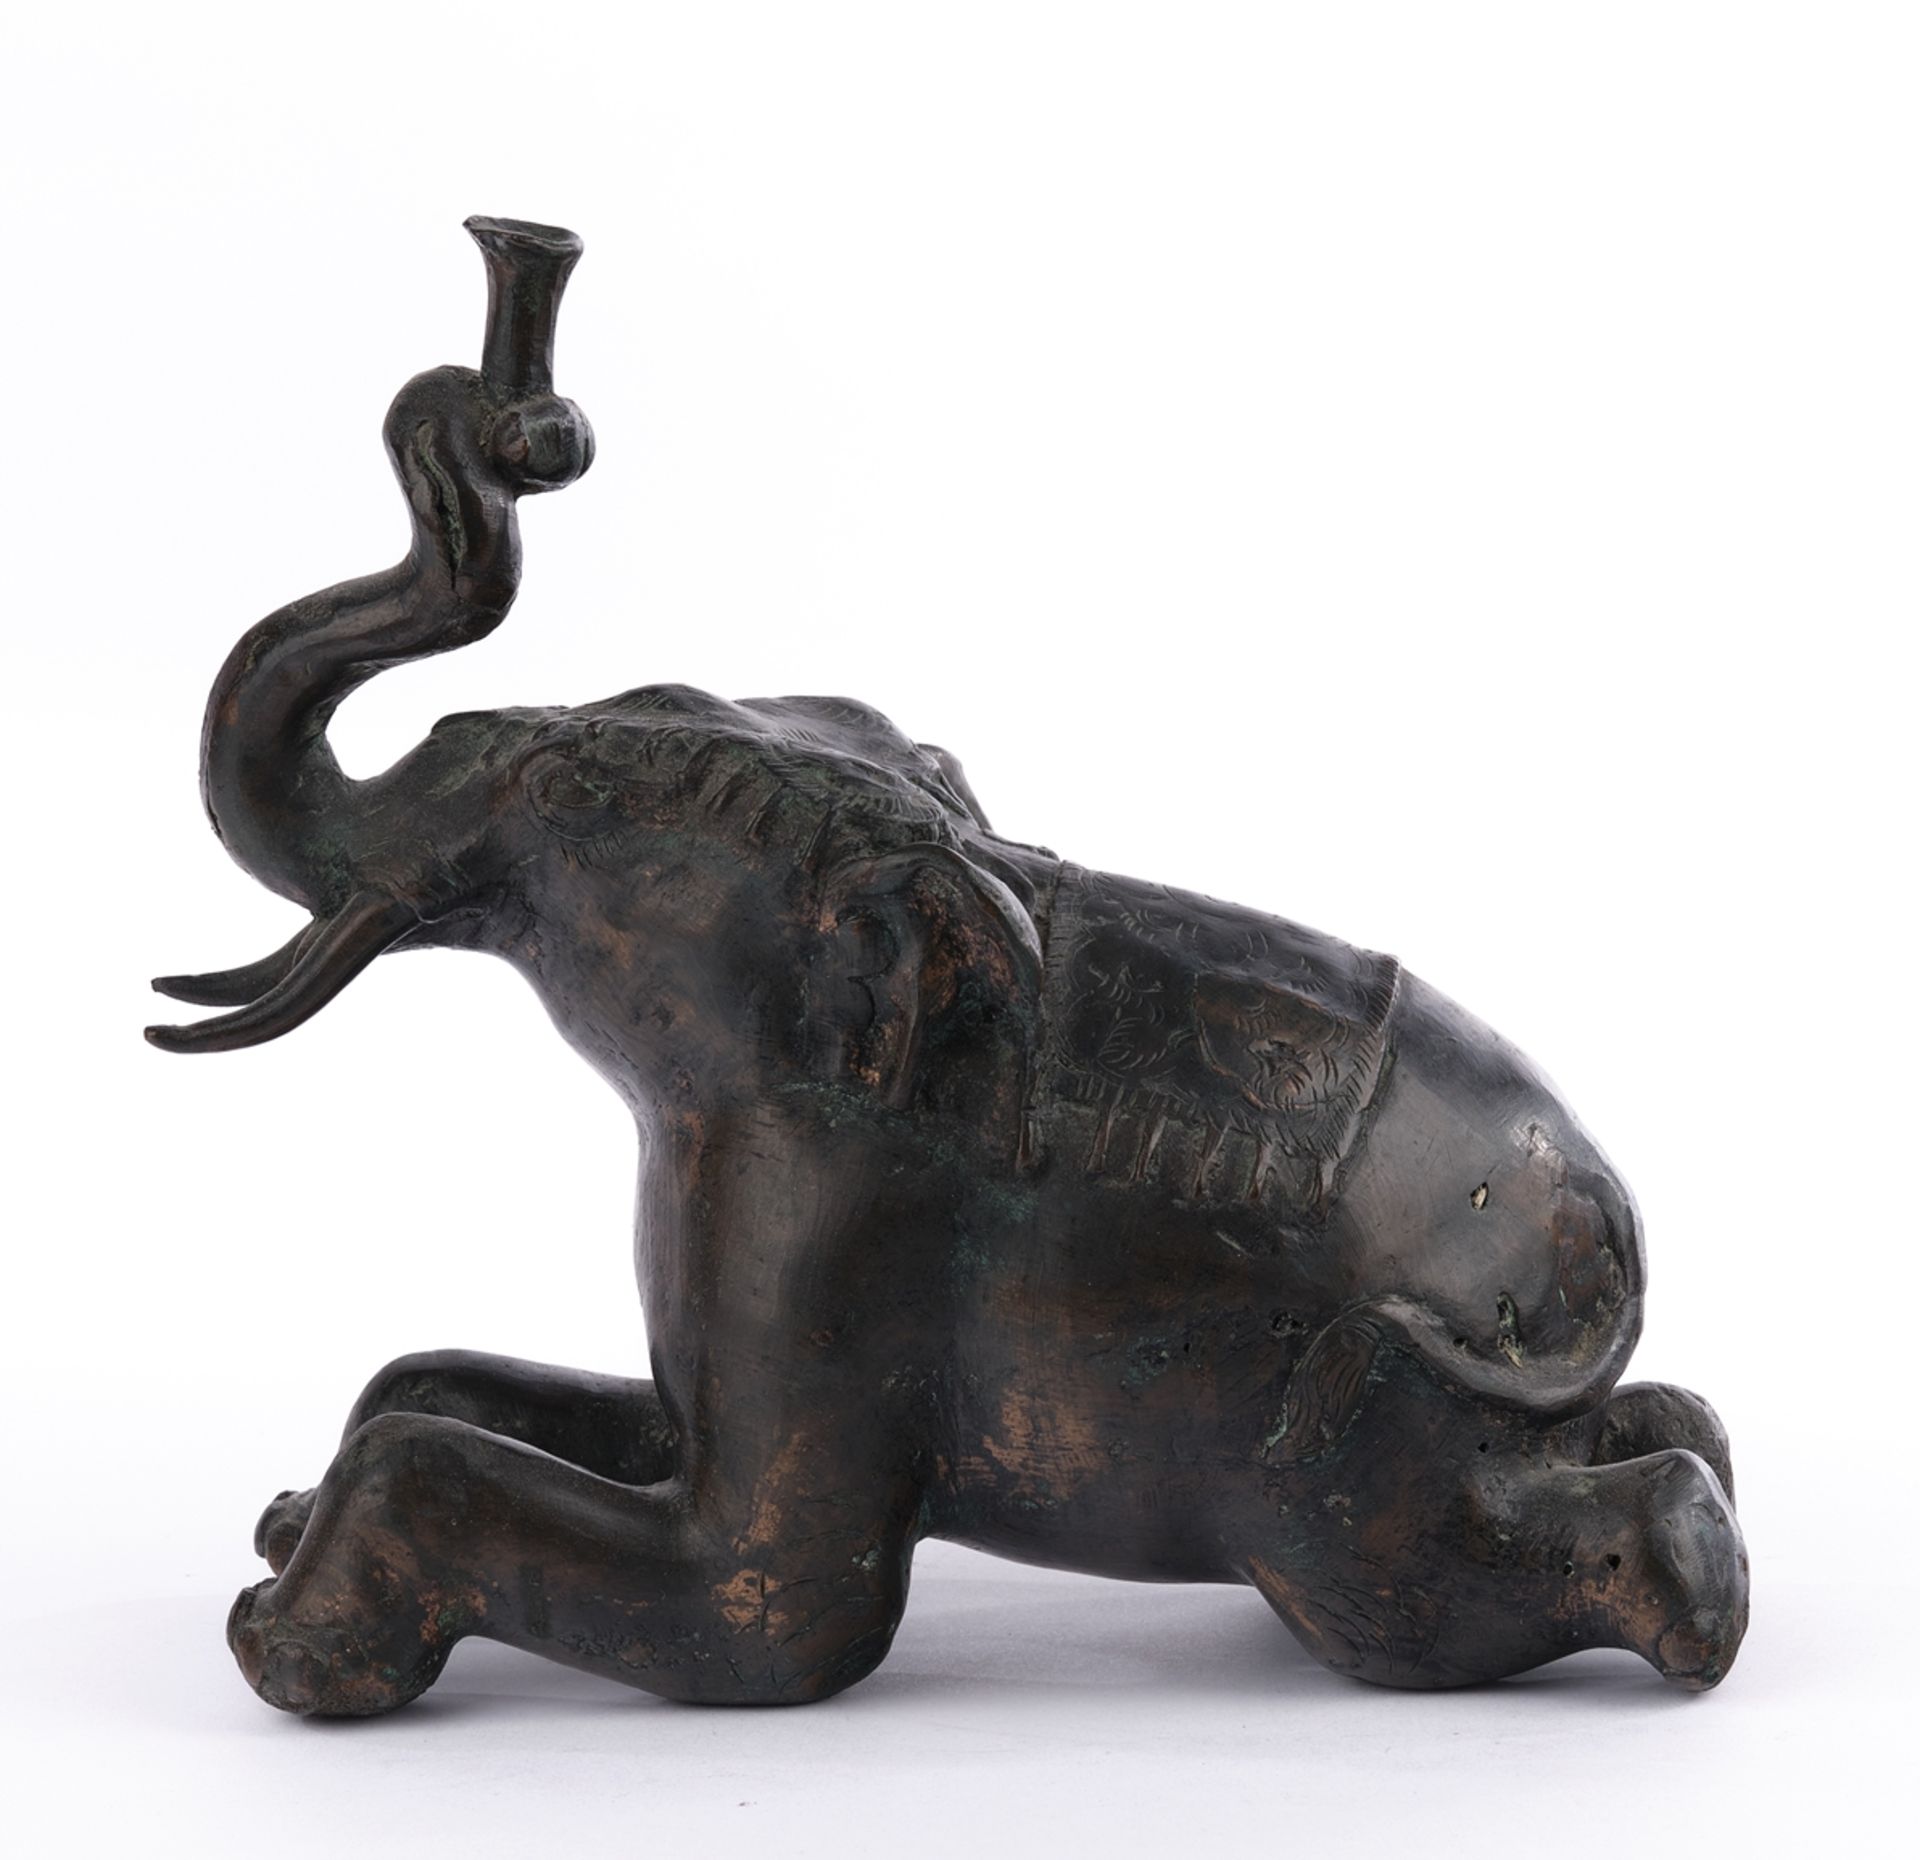 Skulptur, "Liegender Elefant", Indien, 20./21. Jh., Metall, dunkel patiniert, 22 cm hoch - Bild 3 aus 4